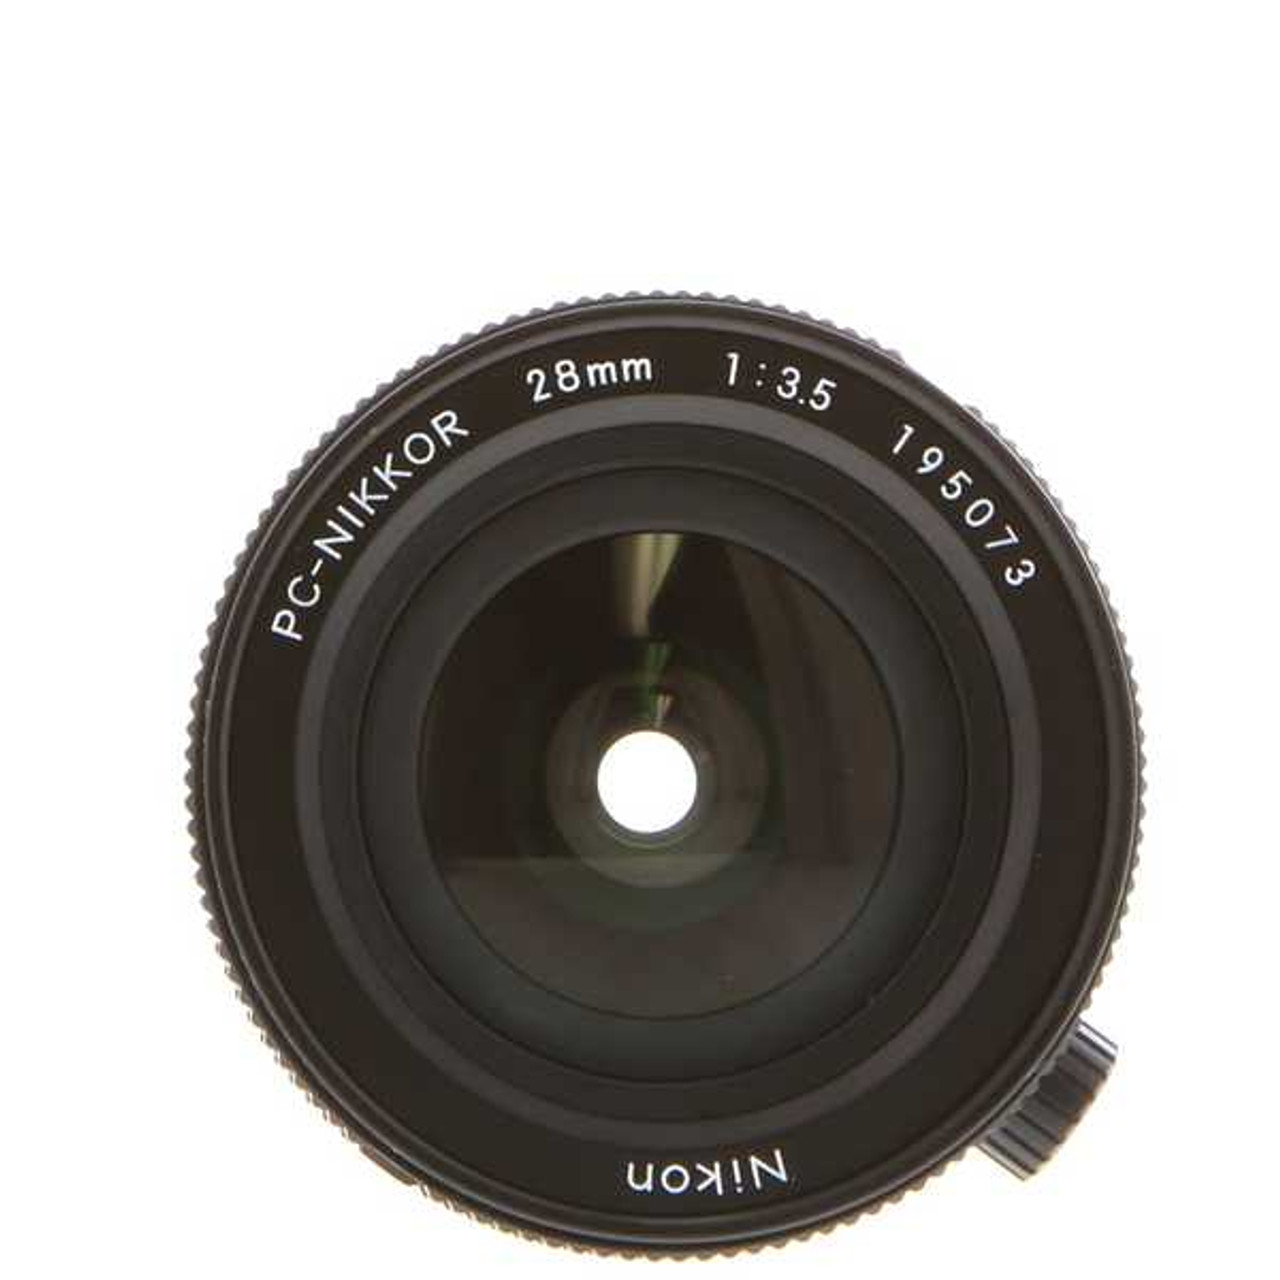 割引クーポン Trendy FlavorNikon ニコン PC Nikkor 28mm F3.5 Manual Focus Lens 